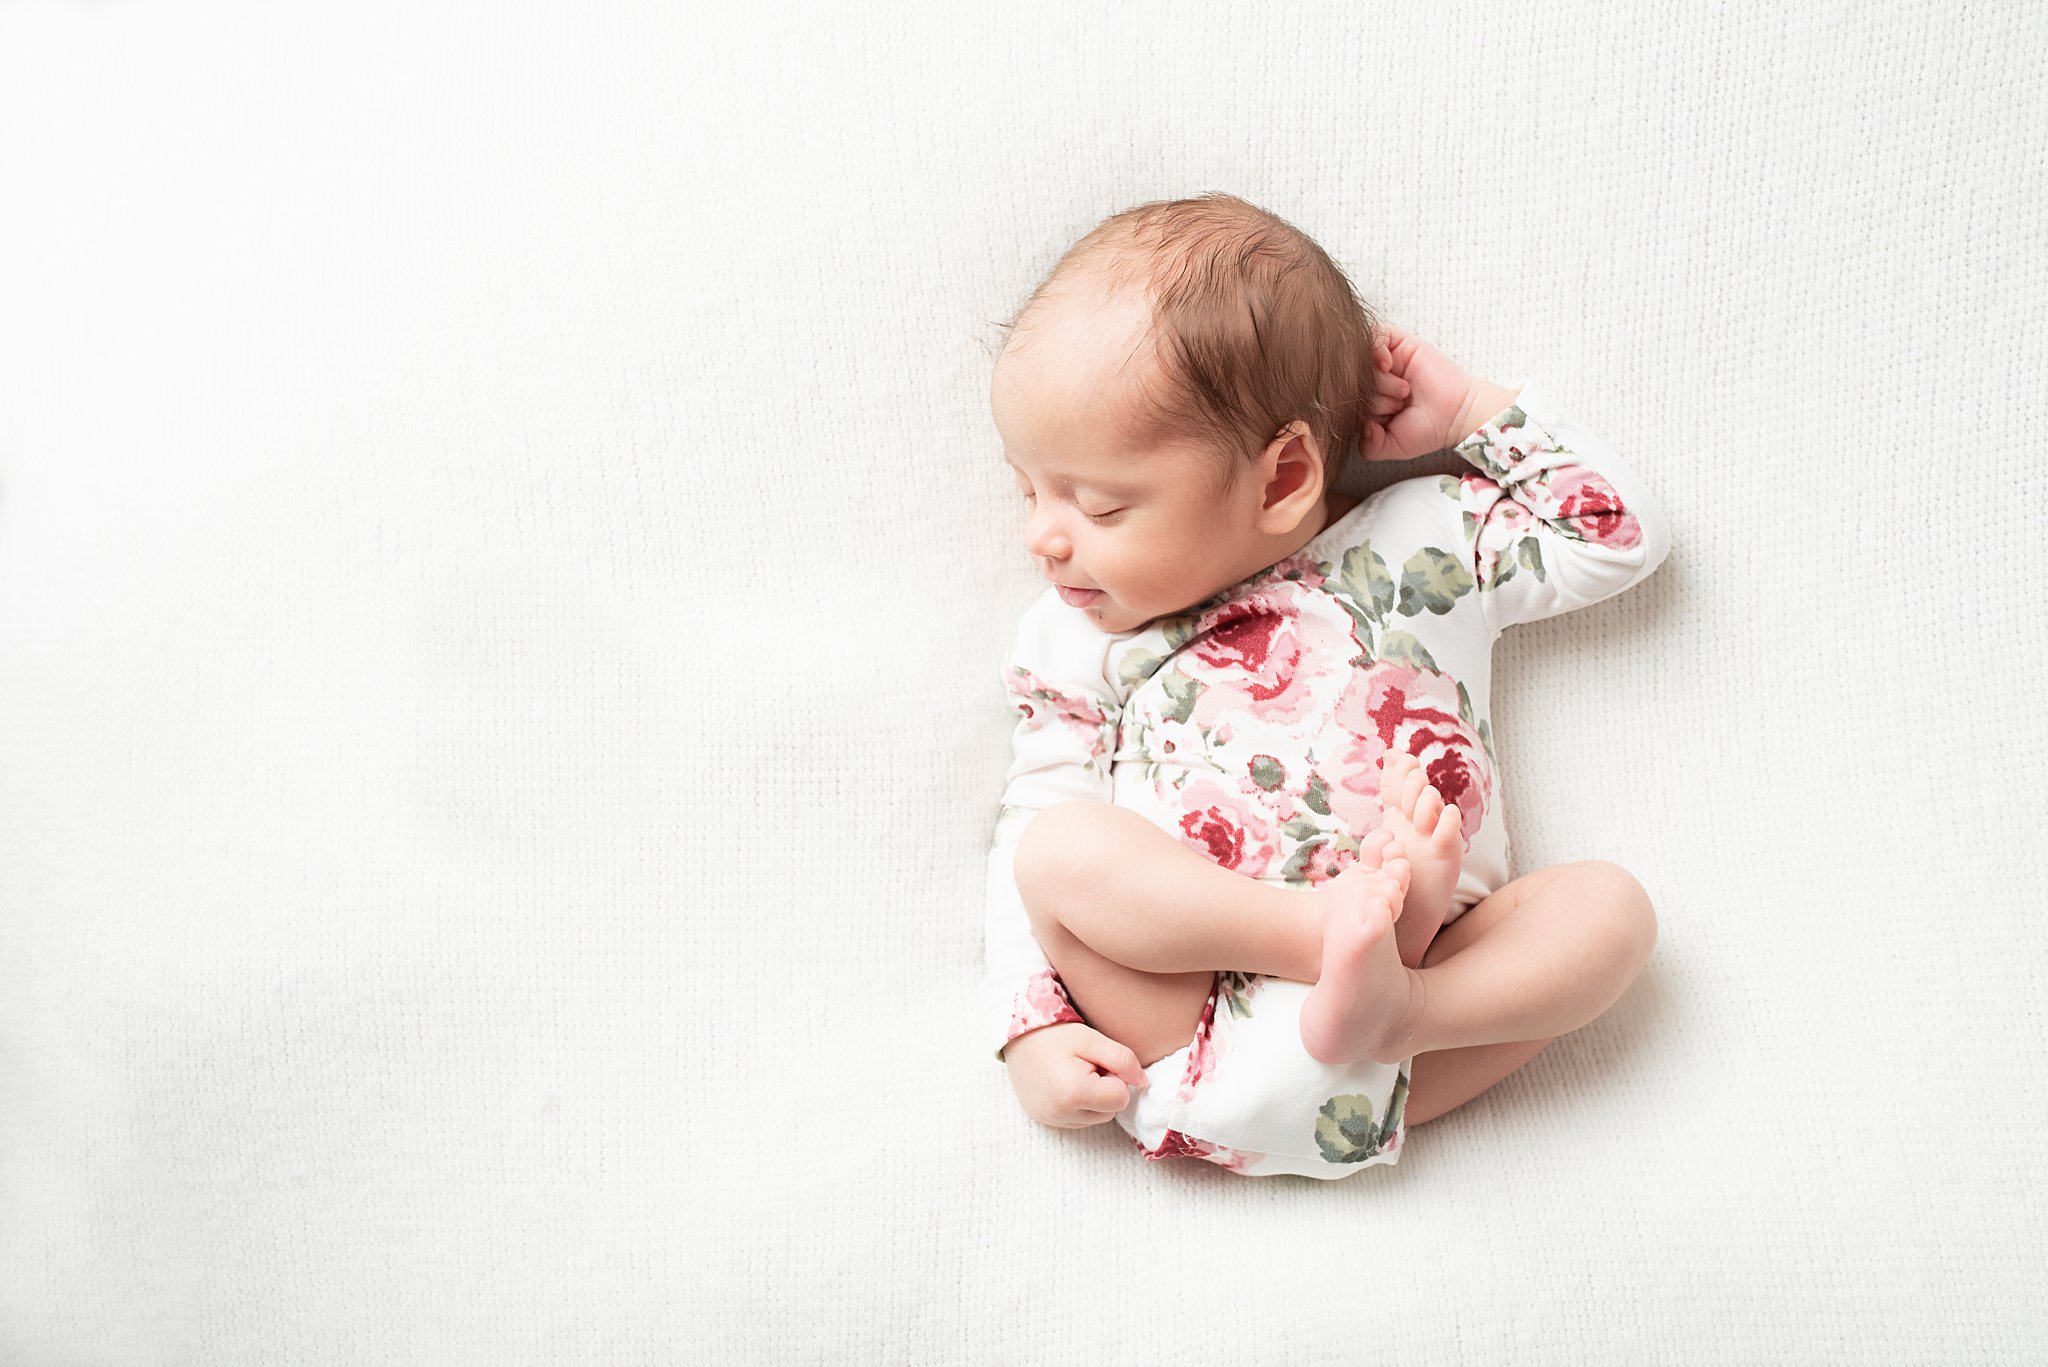 virginia beach va newborn photographer, baby girl outfit, newborn baby girl pose